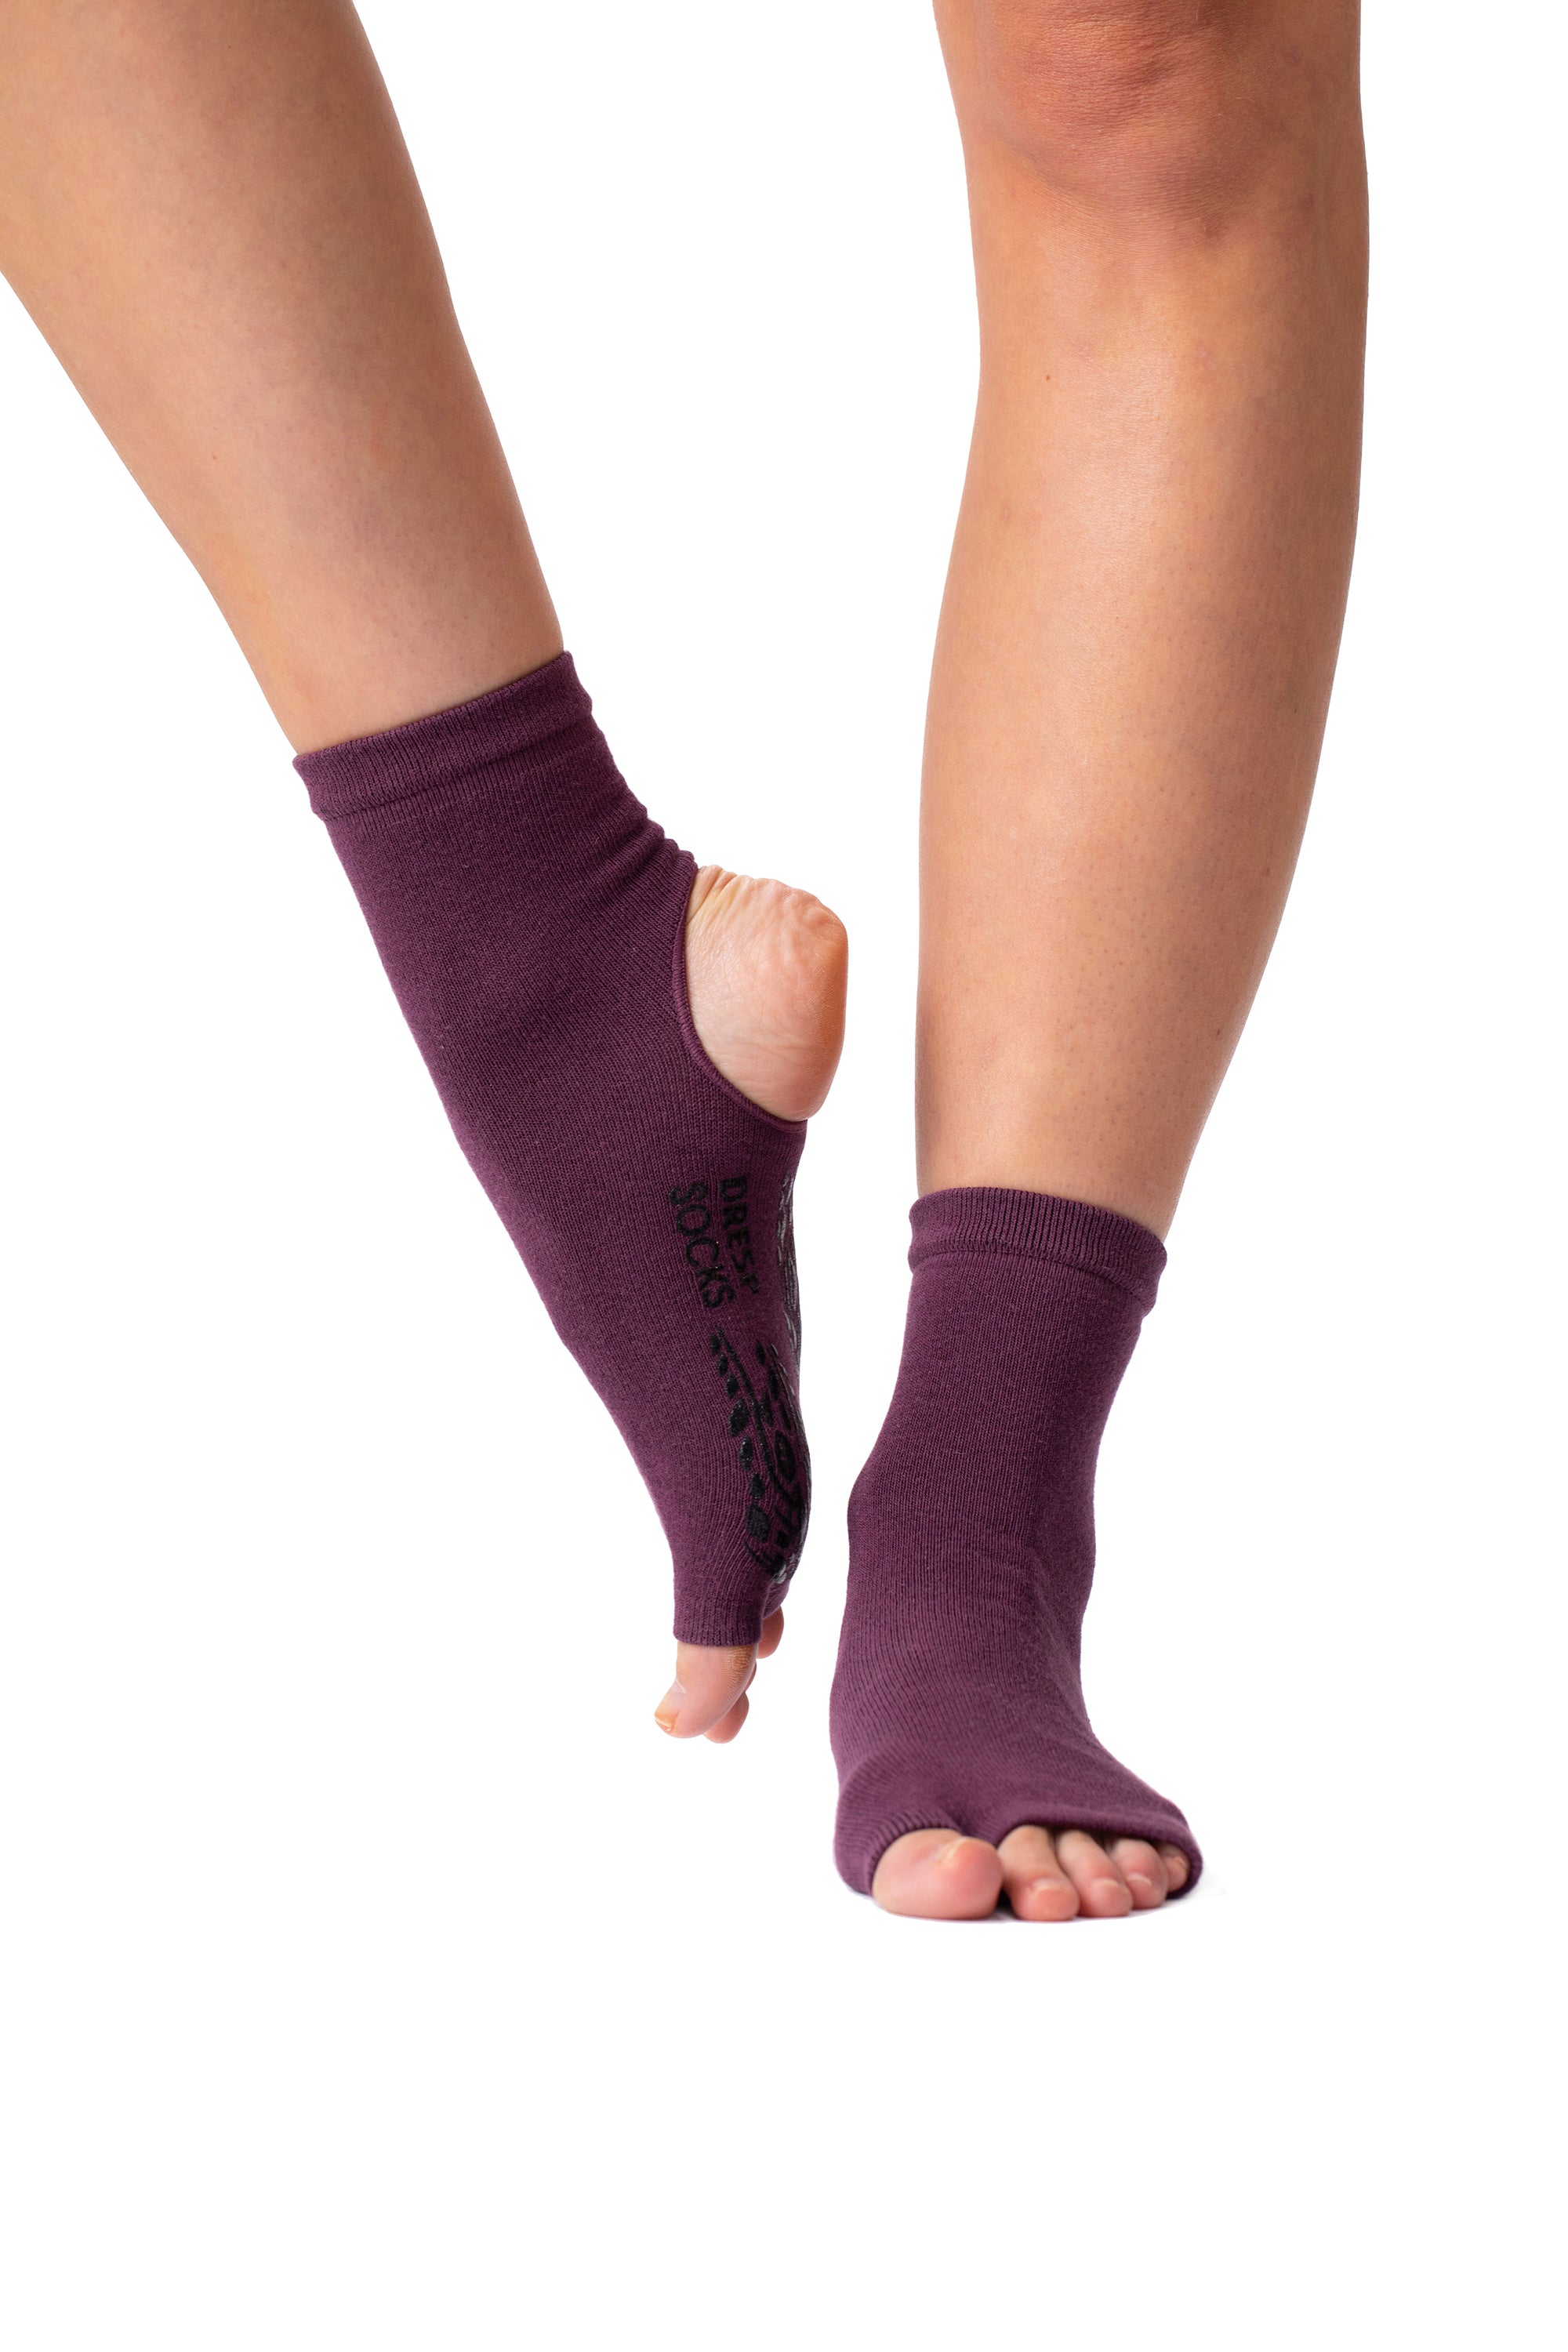 DRESP Zehen- und Fersenfreie Elegante Yoga Socke mit Anti-Rutsch-Sohle -  Baumwoll-Mix Stulpe